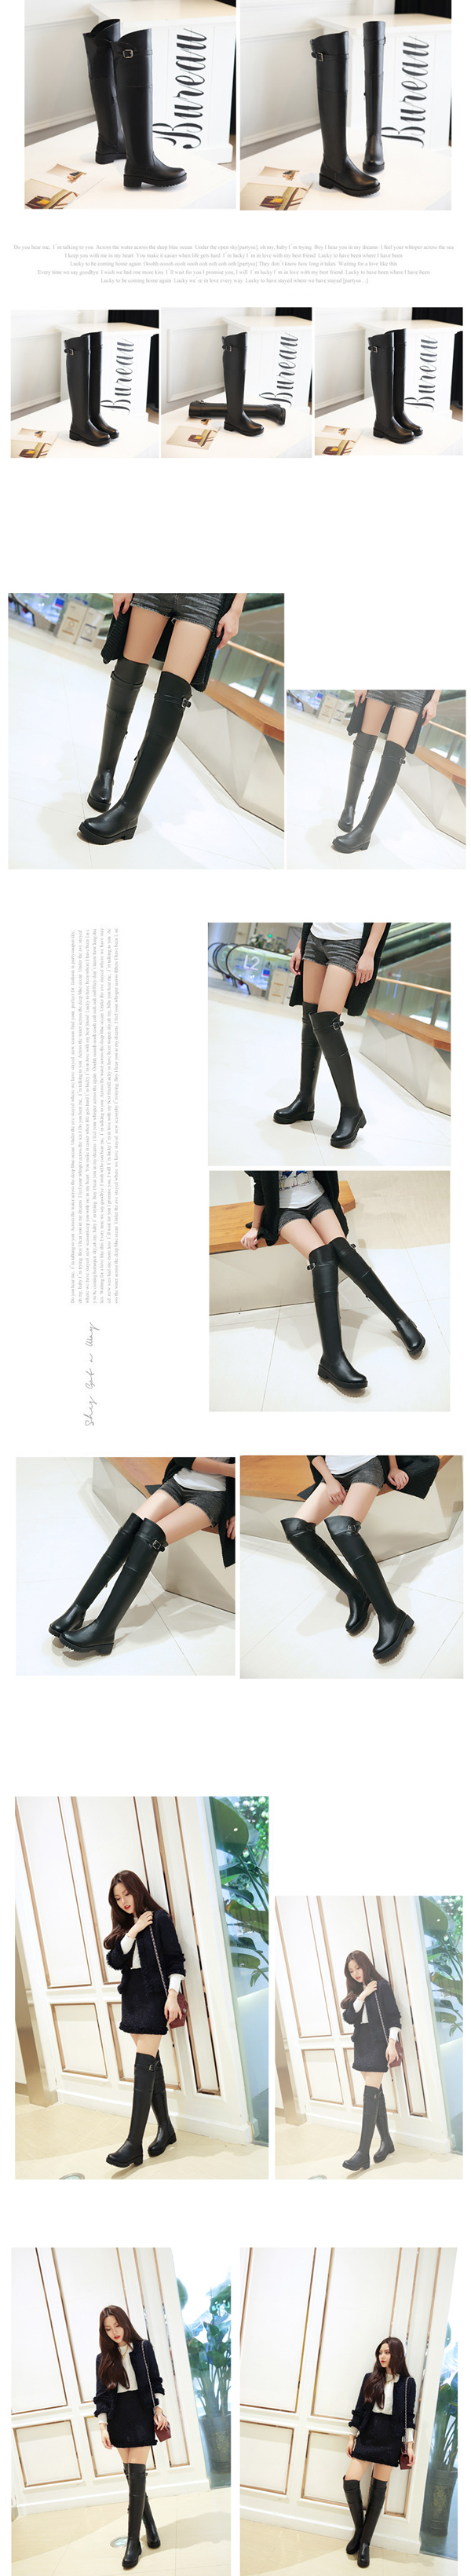 รองเท้าบูทยาว หนังมีส้นสวยแฟชั่นเกาหลีพื้นหยักใหม่ล่าสุด นำเข้า ไซส์33ถึง43 สีดำ - พรีออเดอร์RB2310 ราคา1900บาท